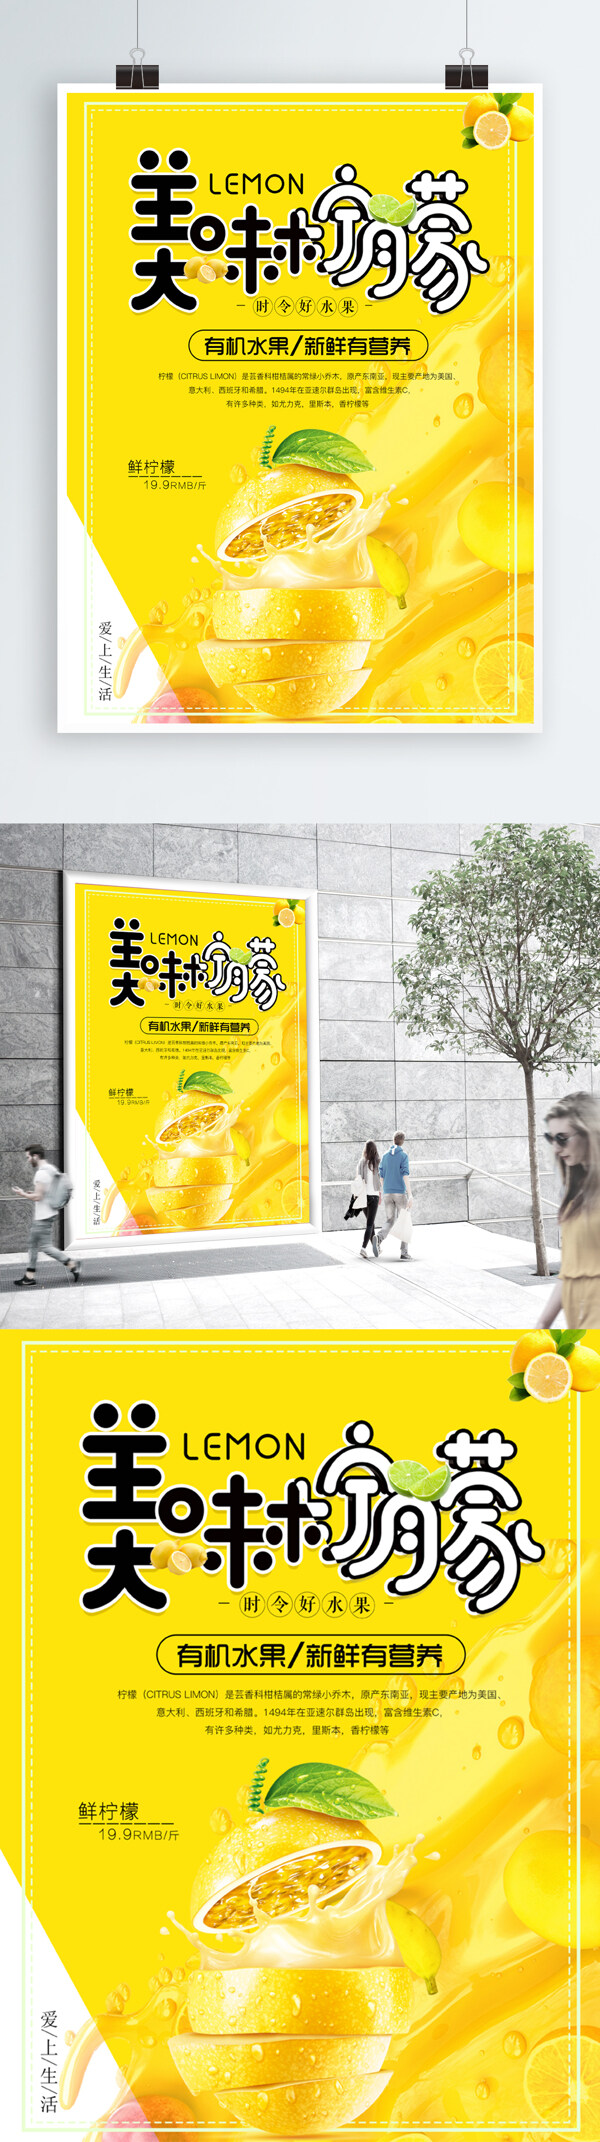 简约创意柠檬促销海报设计